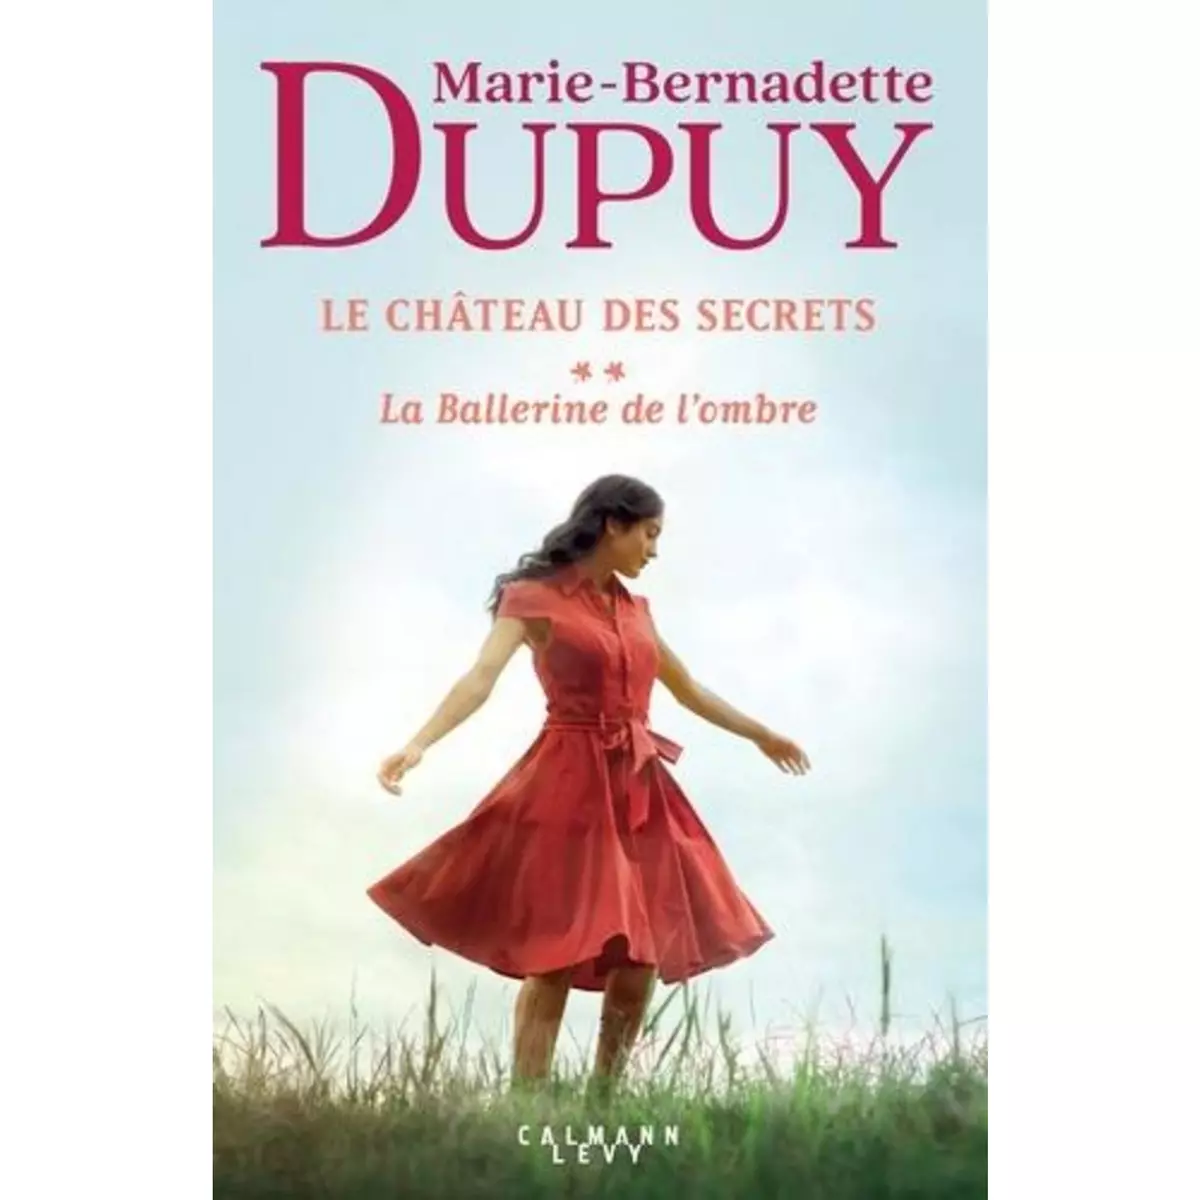  LE CHATEAU DES SECRETS TOME 2 : LA BALLERINE DE L'OMBRE, Dupuy Marie-Bernadette